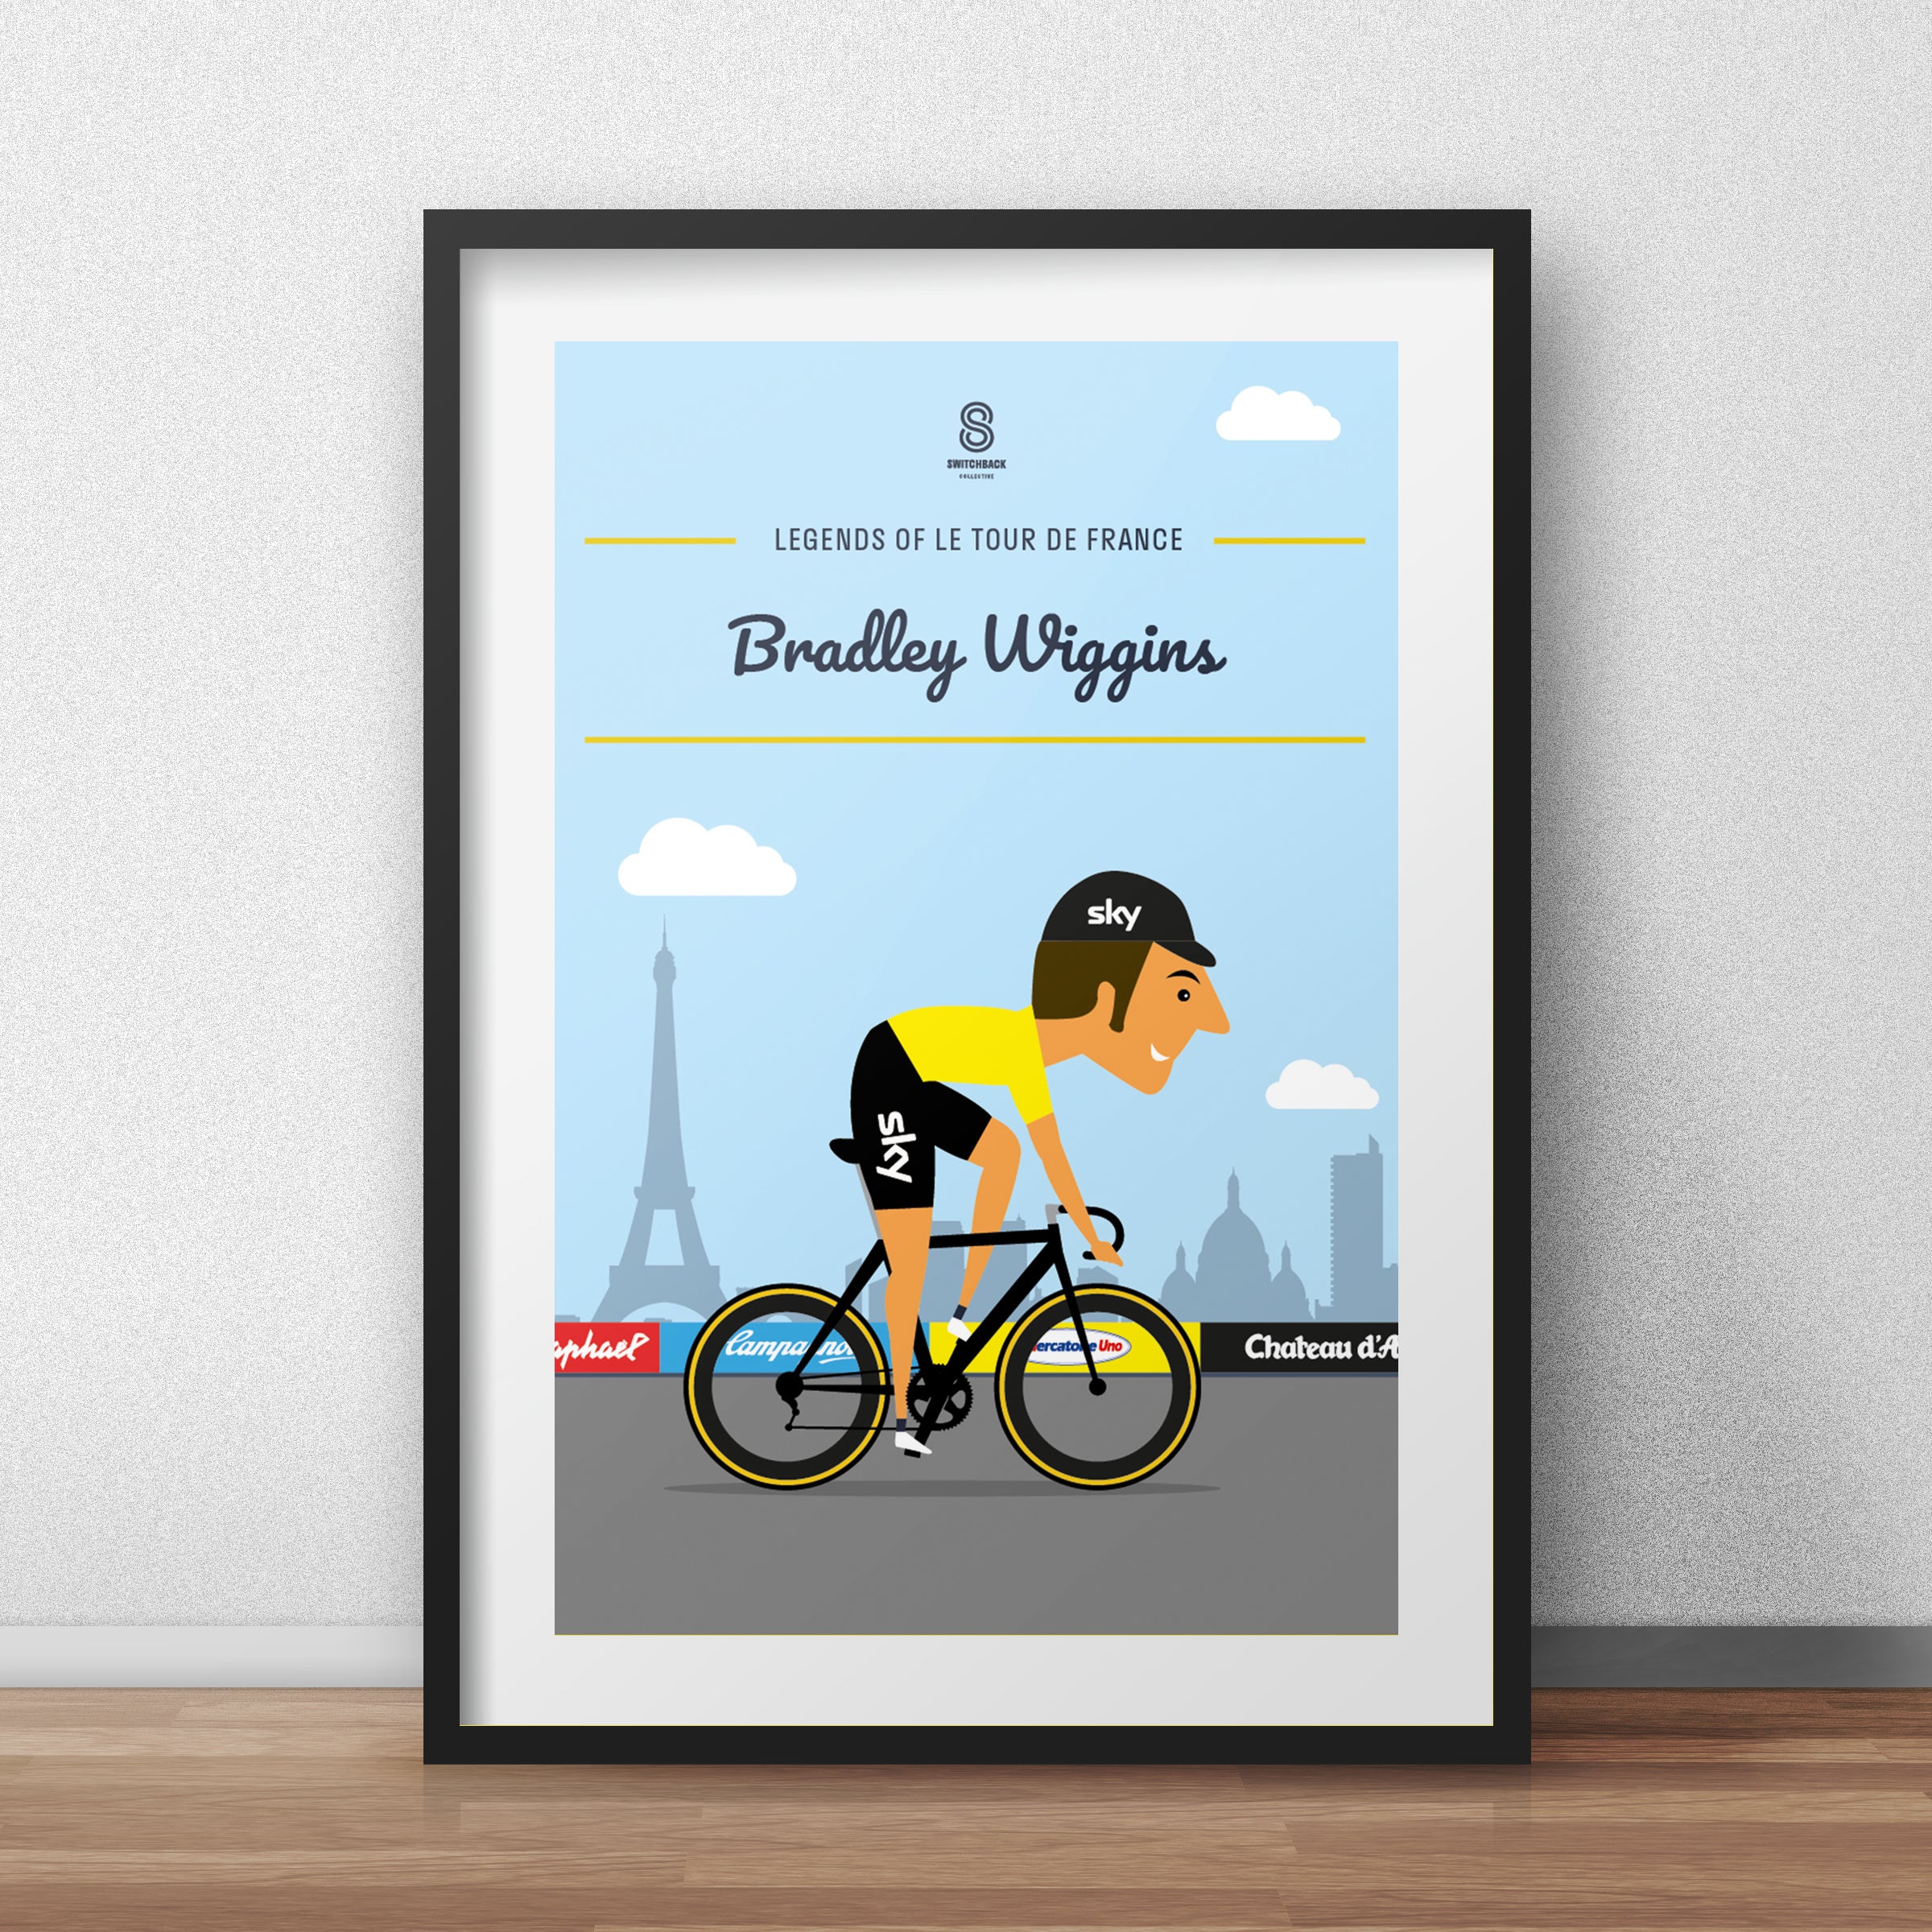 Bradley Wiggins - Legends of Le Tour De France